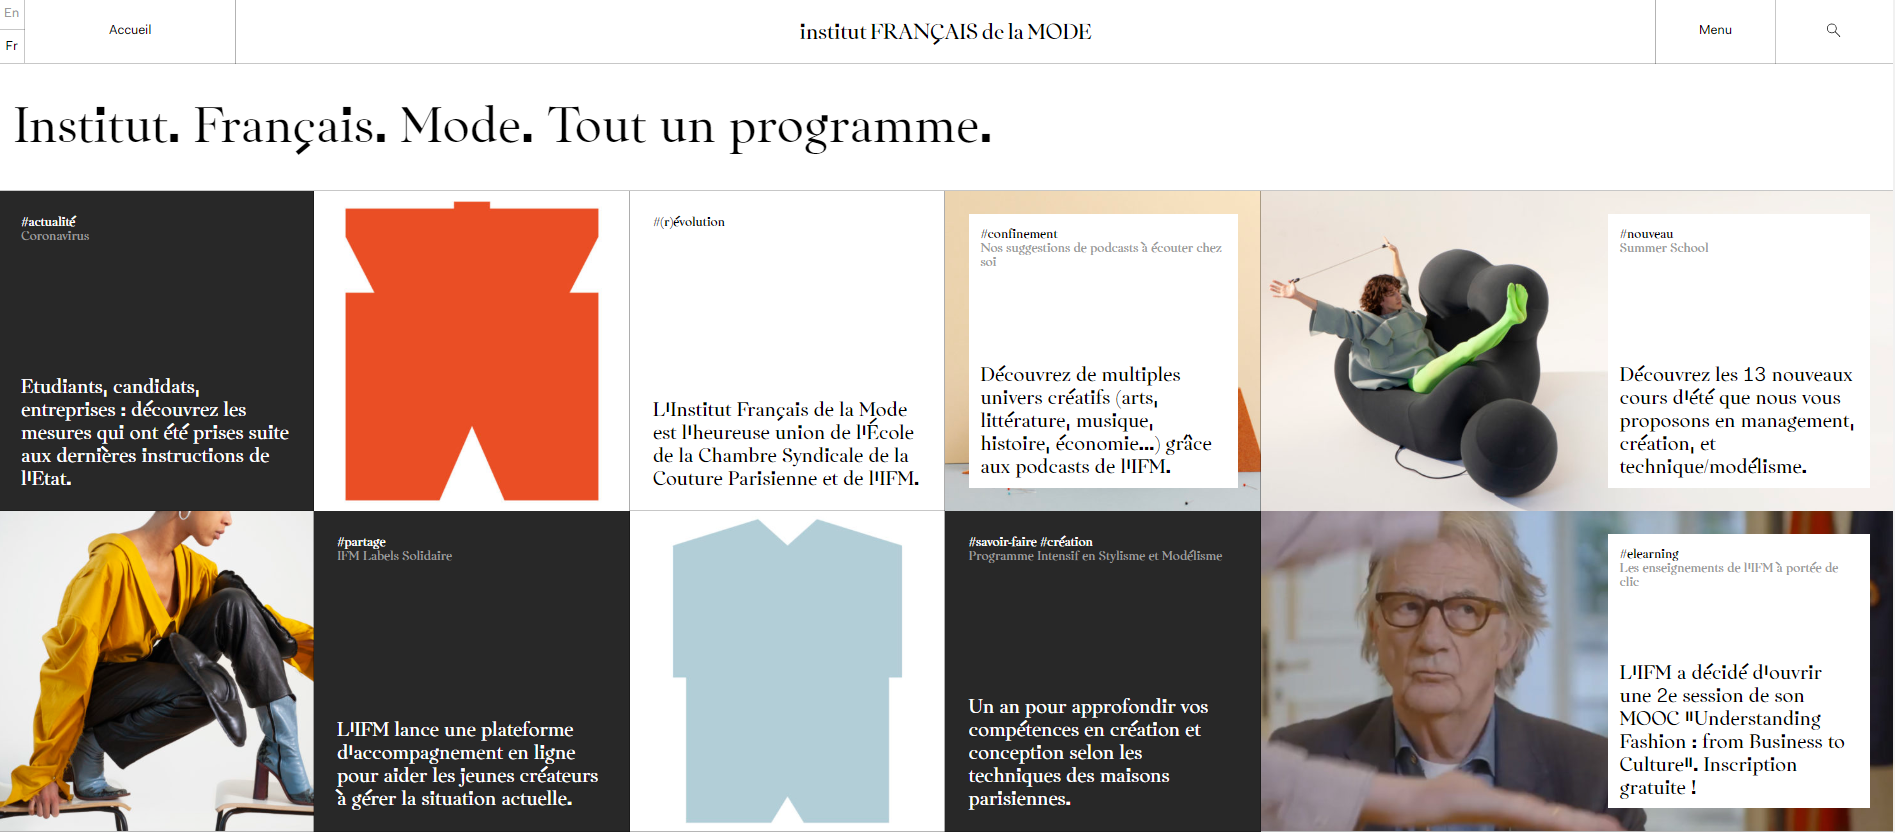 巴黎顶级时尚学院 IFM 开设线上课程，吸引10多万名学员观看